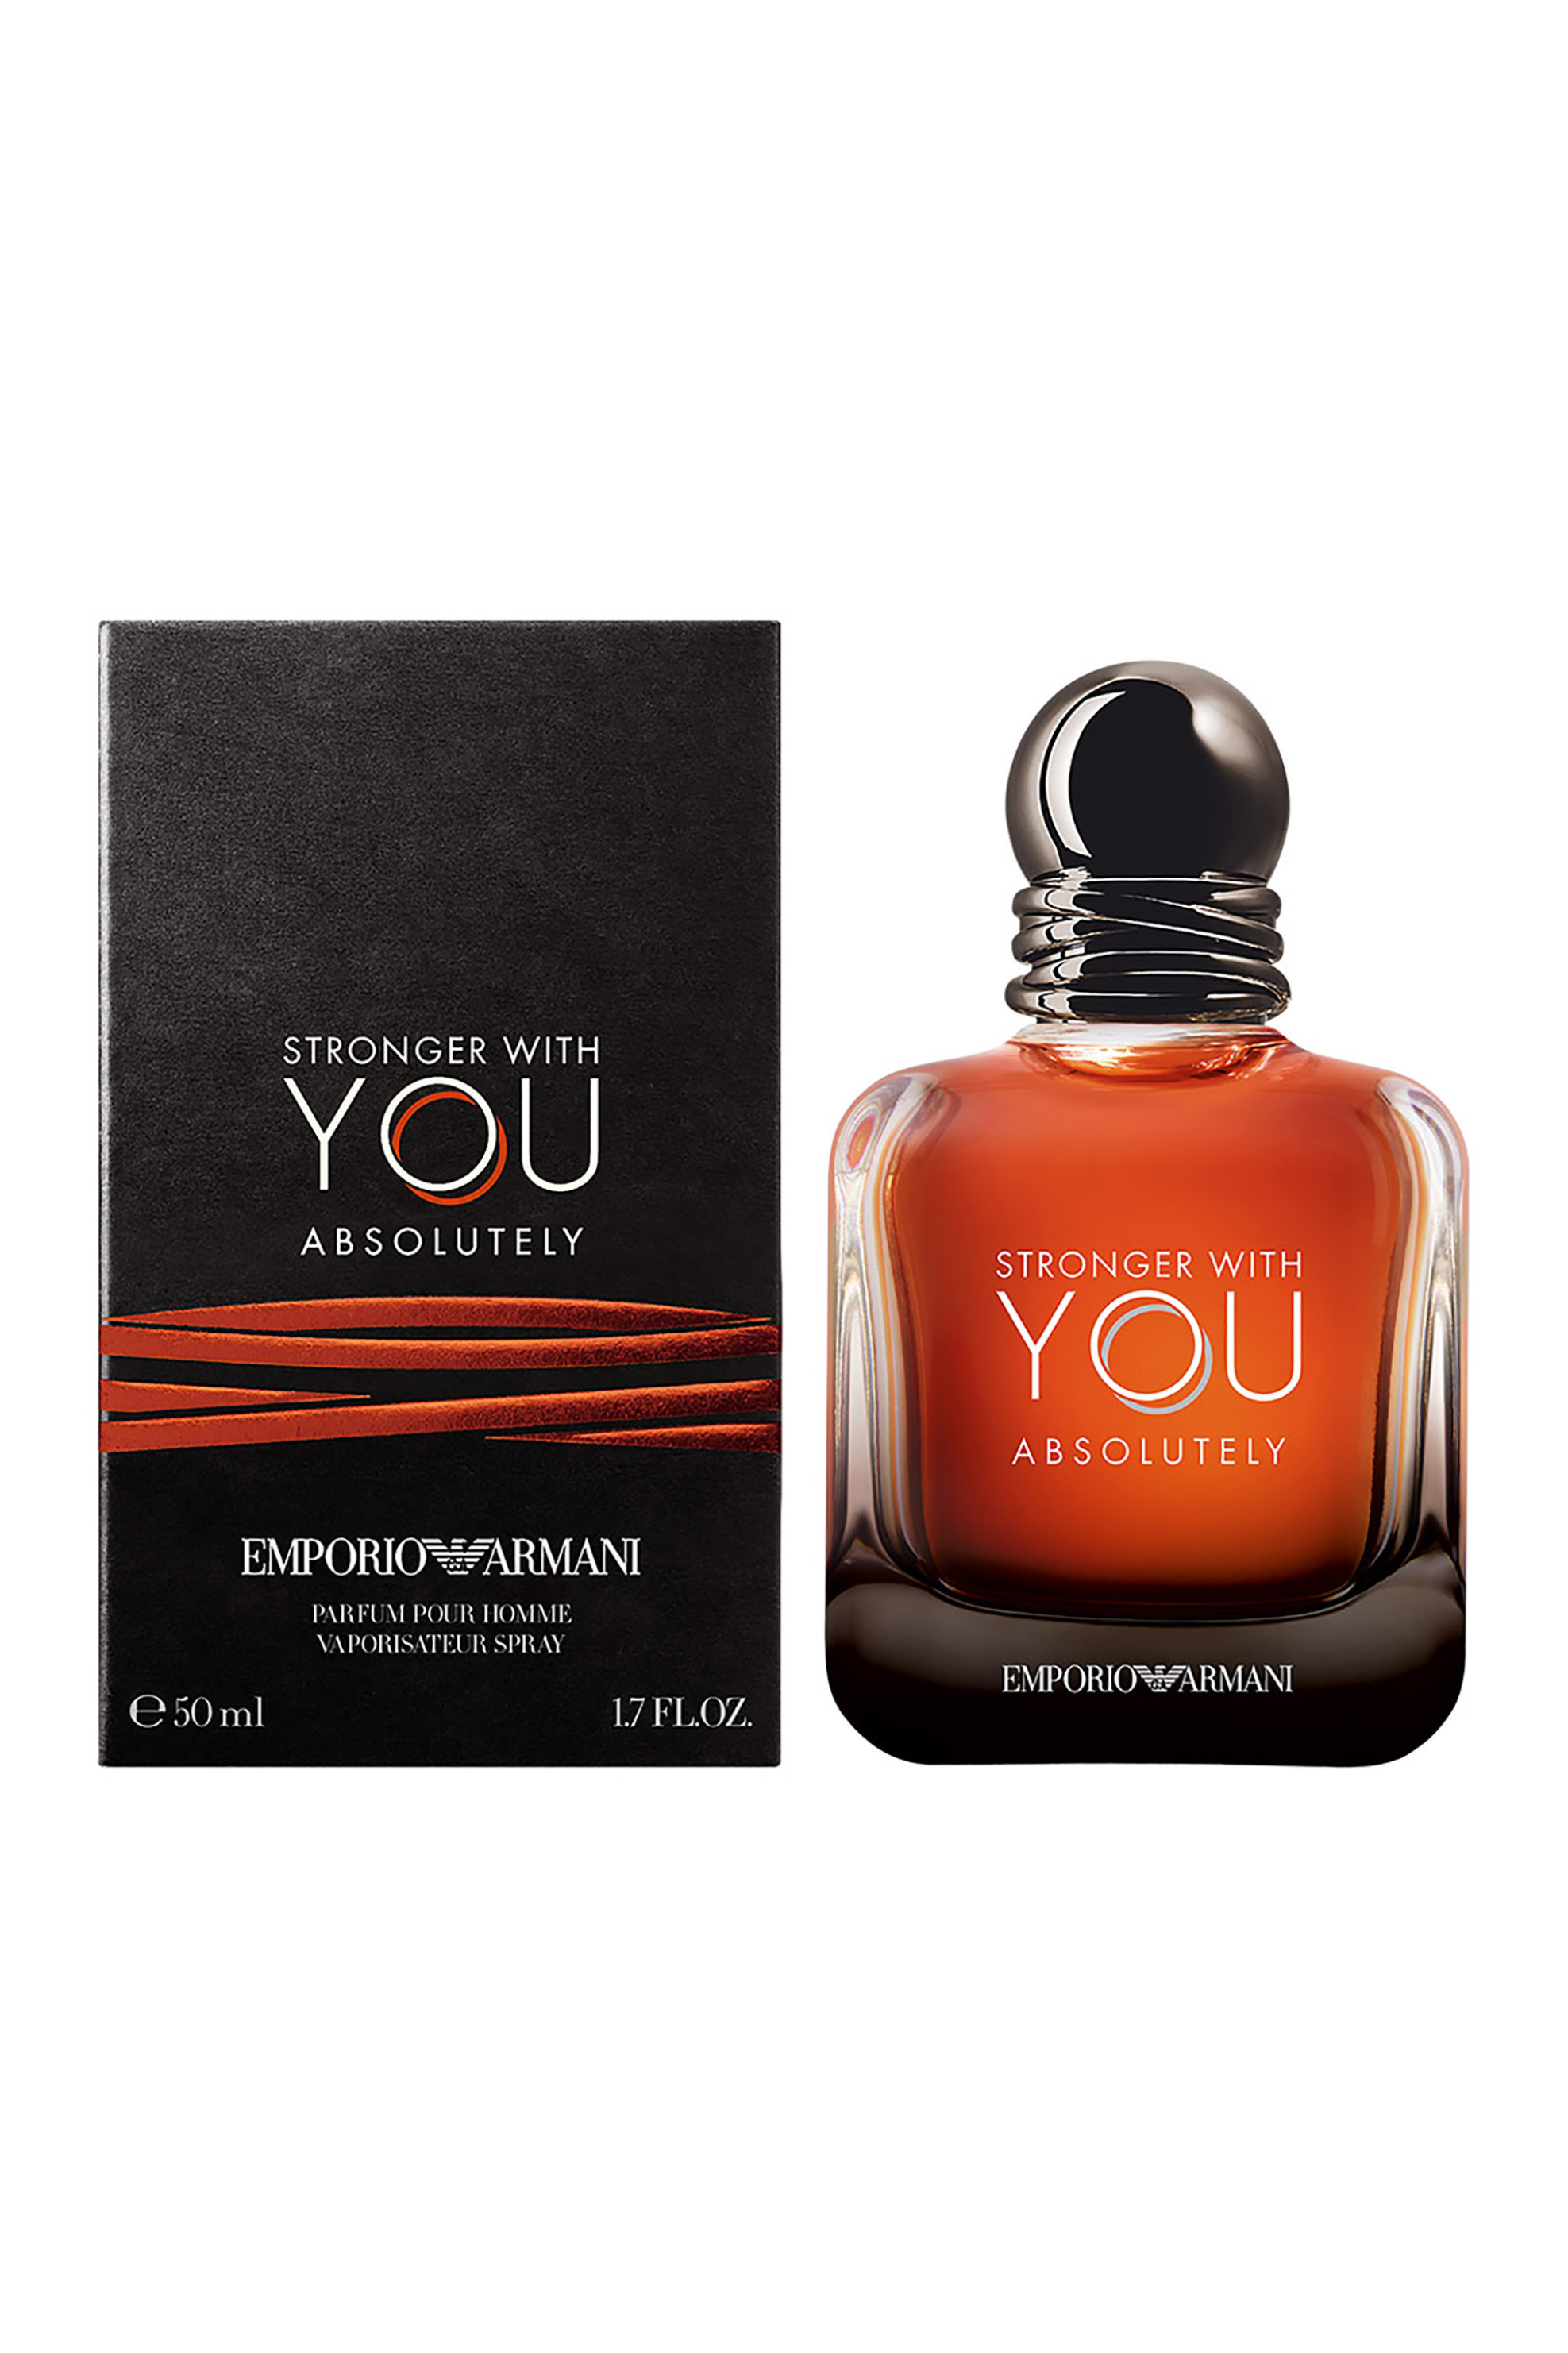 Προϊόντα Ομορφιάς > ΑΡΩΜΑΤΑ > Ανδρικά Αρώματα > Eau de Parfum - Parfum Armani Emporio Armani Stronger With You Absolutely Parfum - 3614273335812